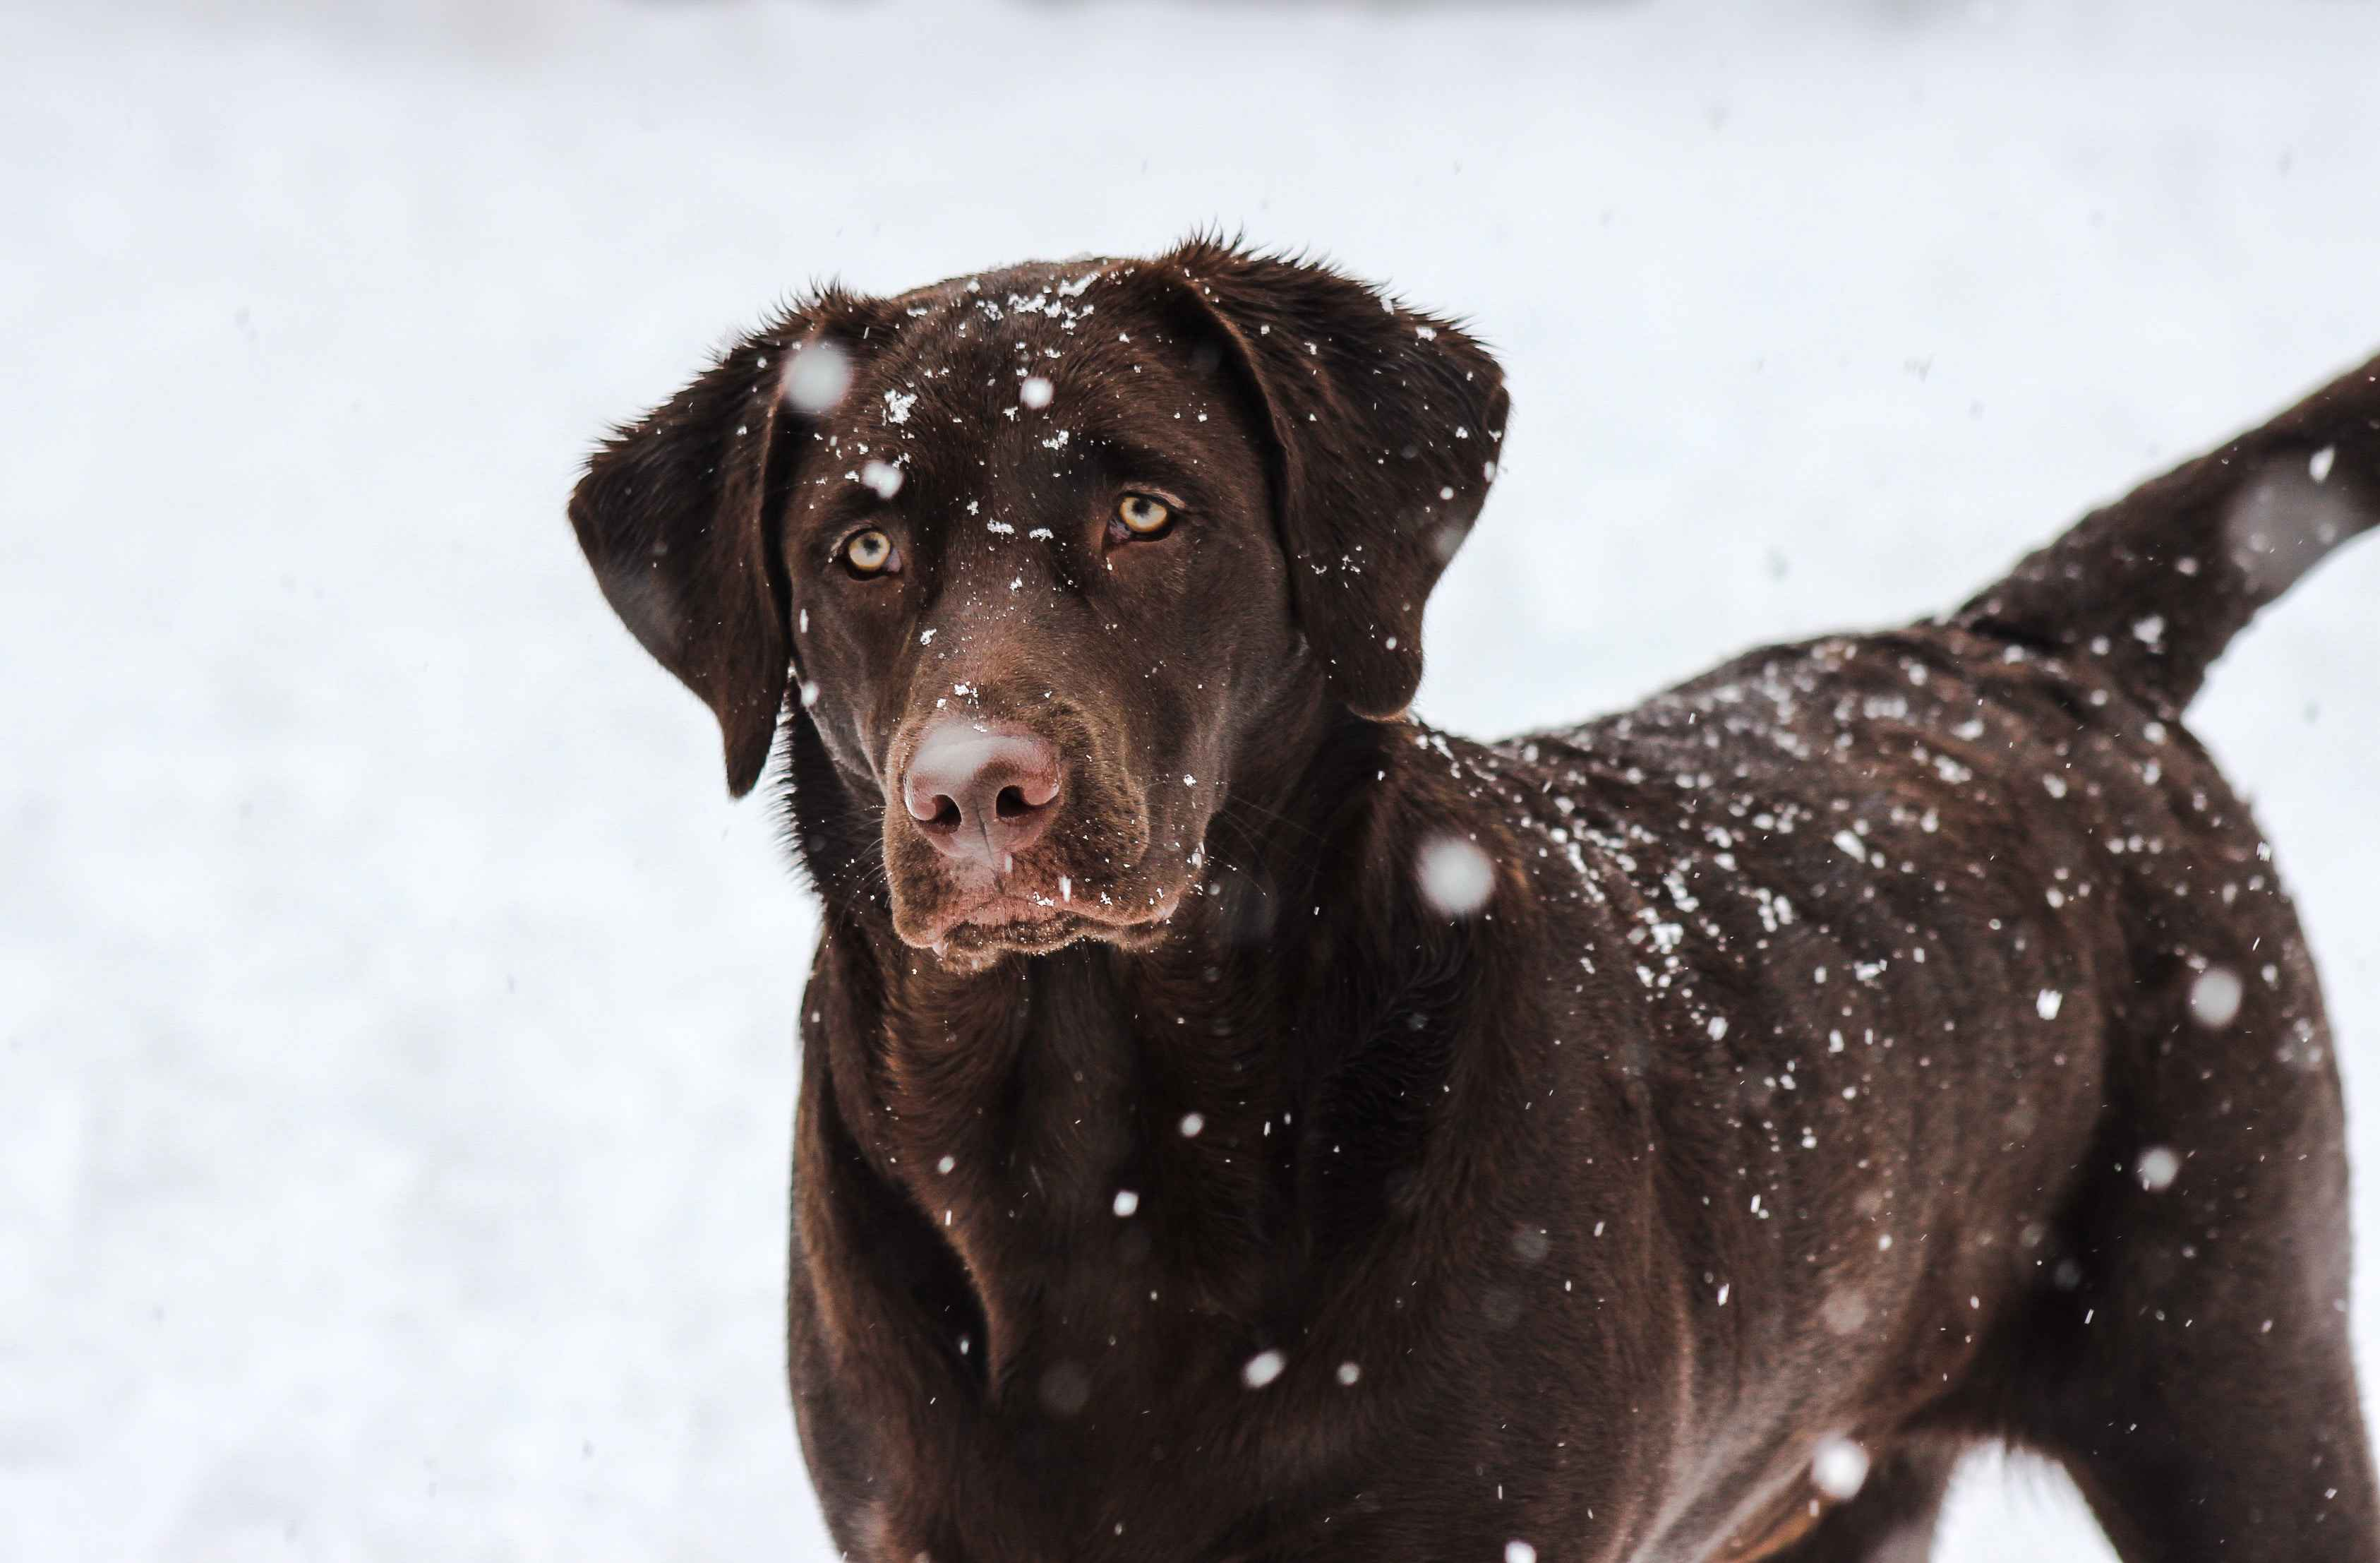 Labrador Retriever Training: Tips for Managing their Natural Retrieving Instincts